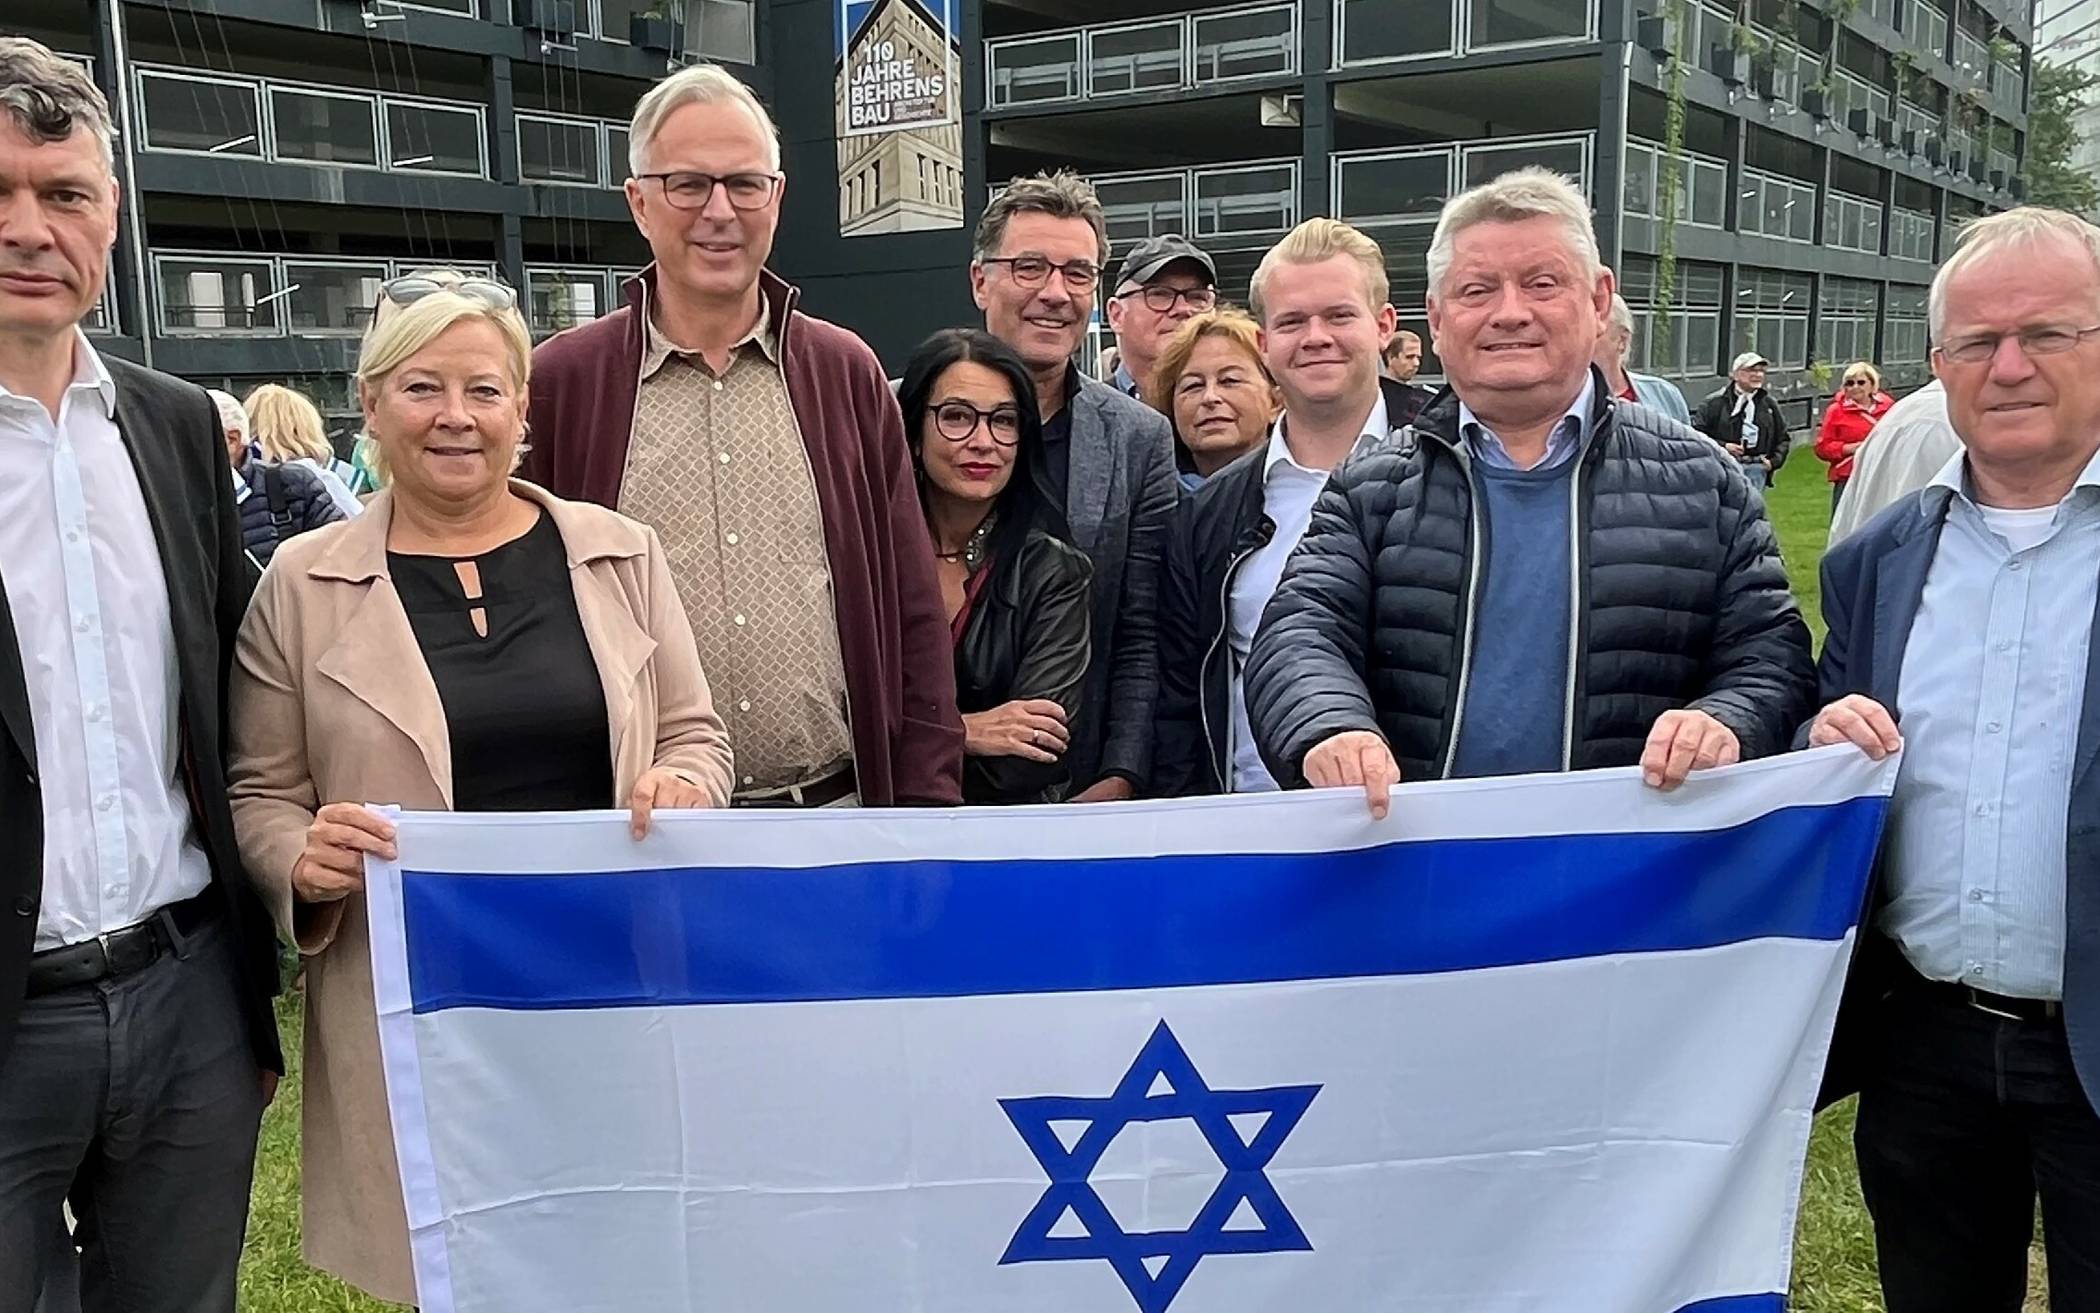 Zahlreiche Neusser waren bei der Solidaritätskundgebung „NRW steht zu Israel“ dabei, unter anderem die Landtagsabgeordneten Dr. Jörg Geerlings und Heike Troles, Kreisdirektor Dirk Brügge (v.l.) sowie der Bundestagsabgeordnete Hermann Gröhe (2.v.r.).